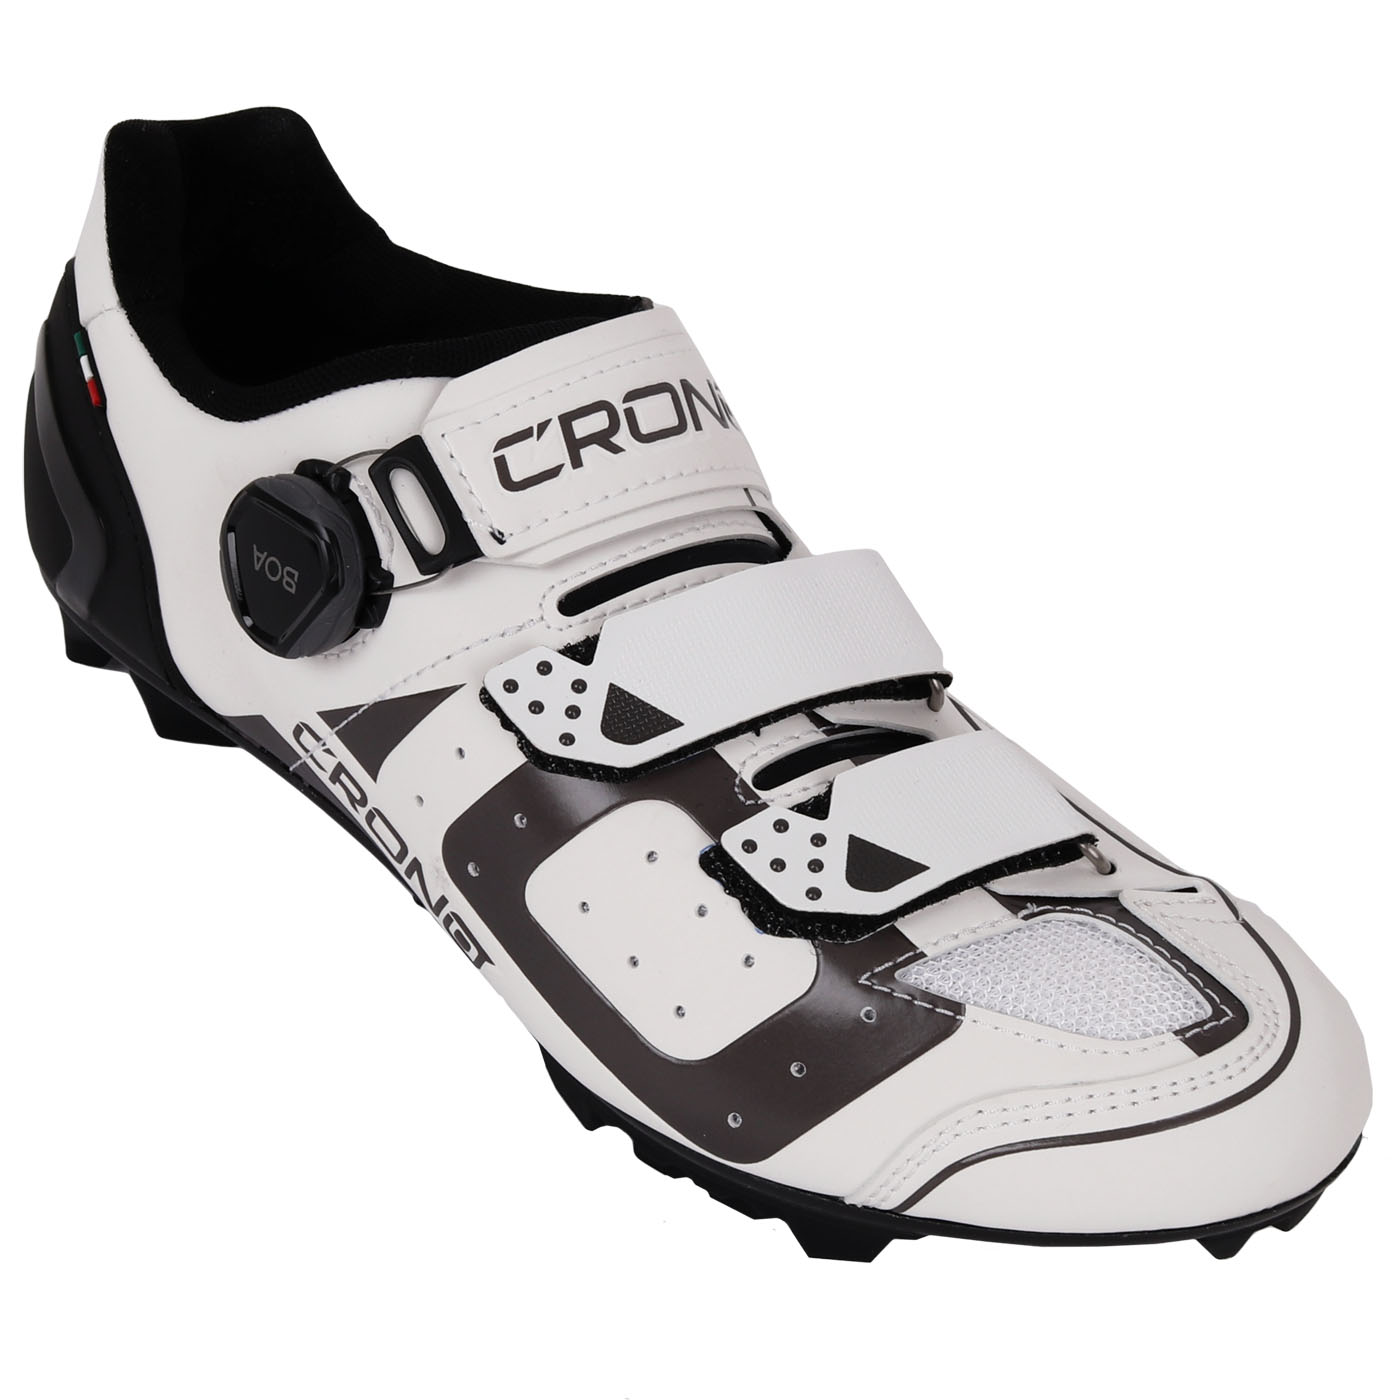 Produktbild von Crono CX3 MTB Schuhe - Weiß